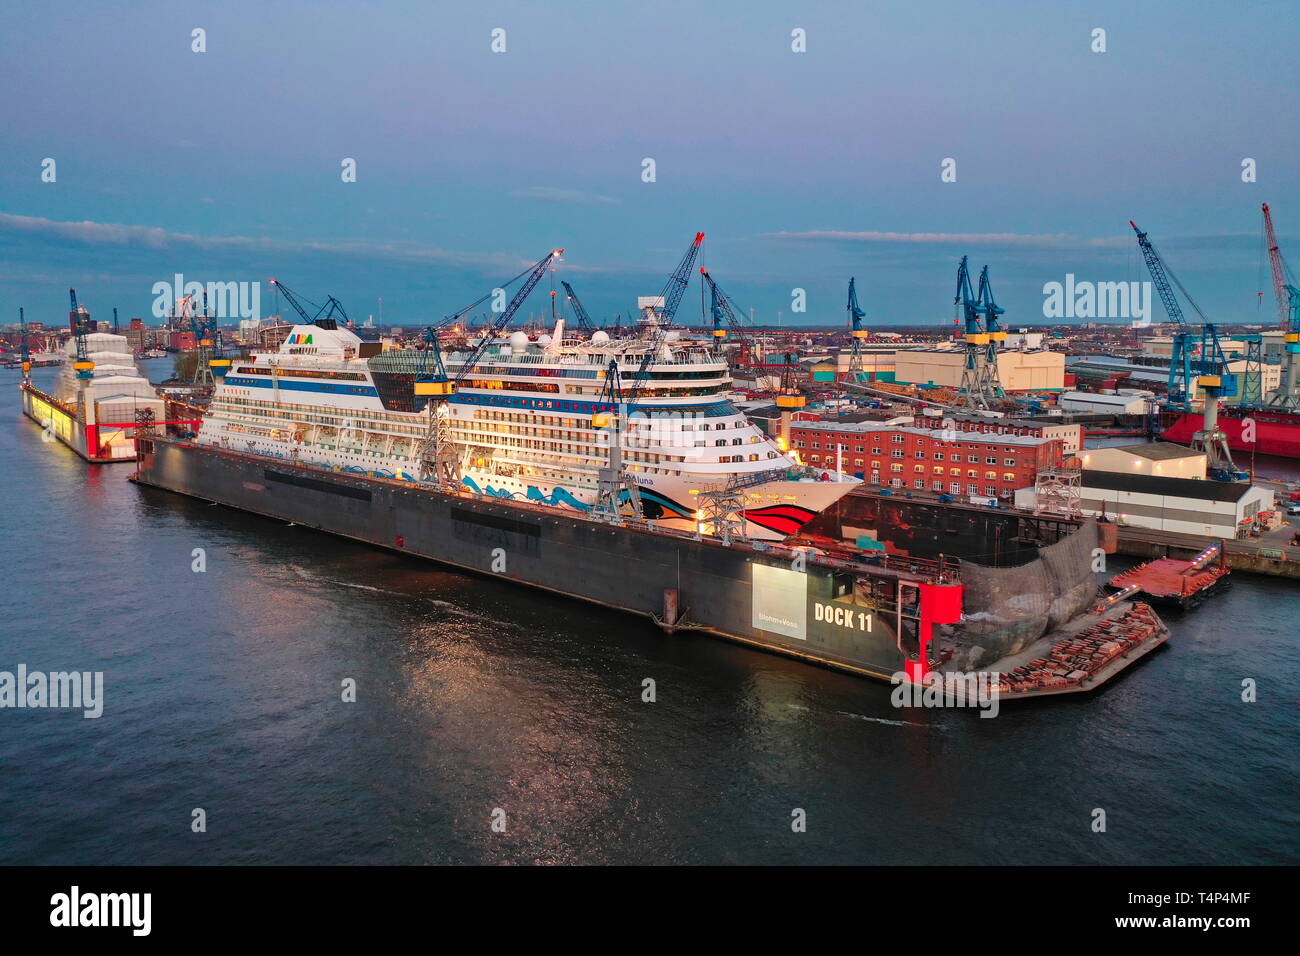 Hamburg Hafen. Kreuzfahrtschiff AIDALuna im Dock 11 der Werft Blohm + Voss.  Abendstimmung, Luftaufnahme. Derzeit ist das Kreuzfahrtschiff AIDA Luna z  Photo Stock - Alamy